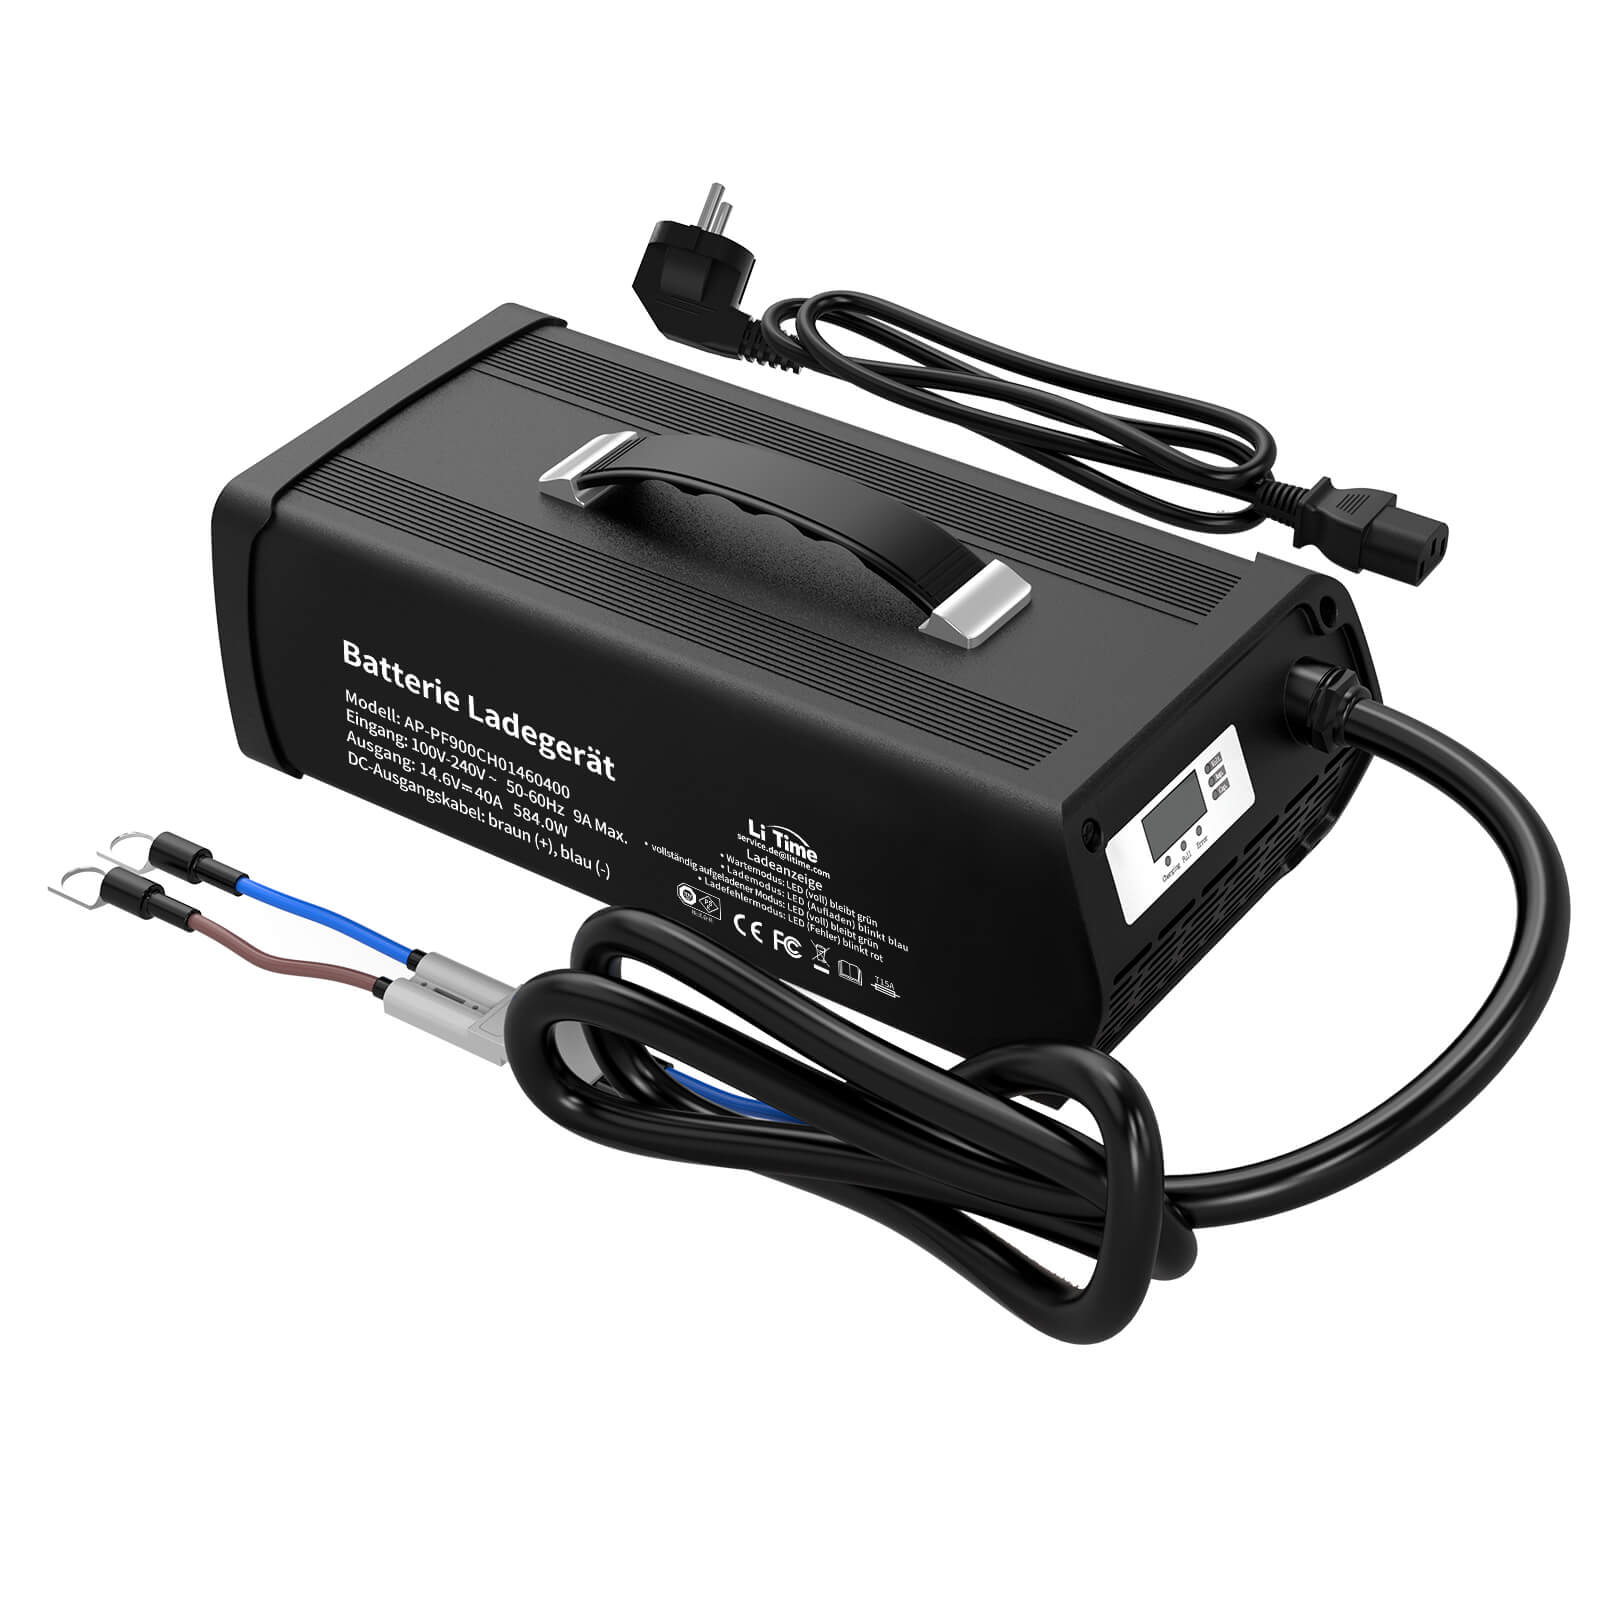 Ładowarka akumulatorów litowych LiTime 14,6 V 40 A do akumulatorów litowych LiFePO4 12 V